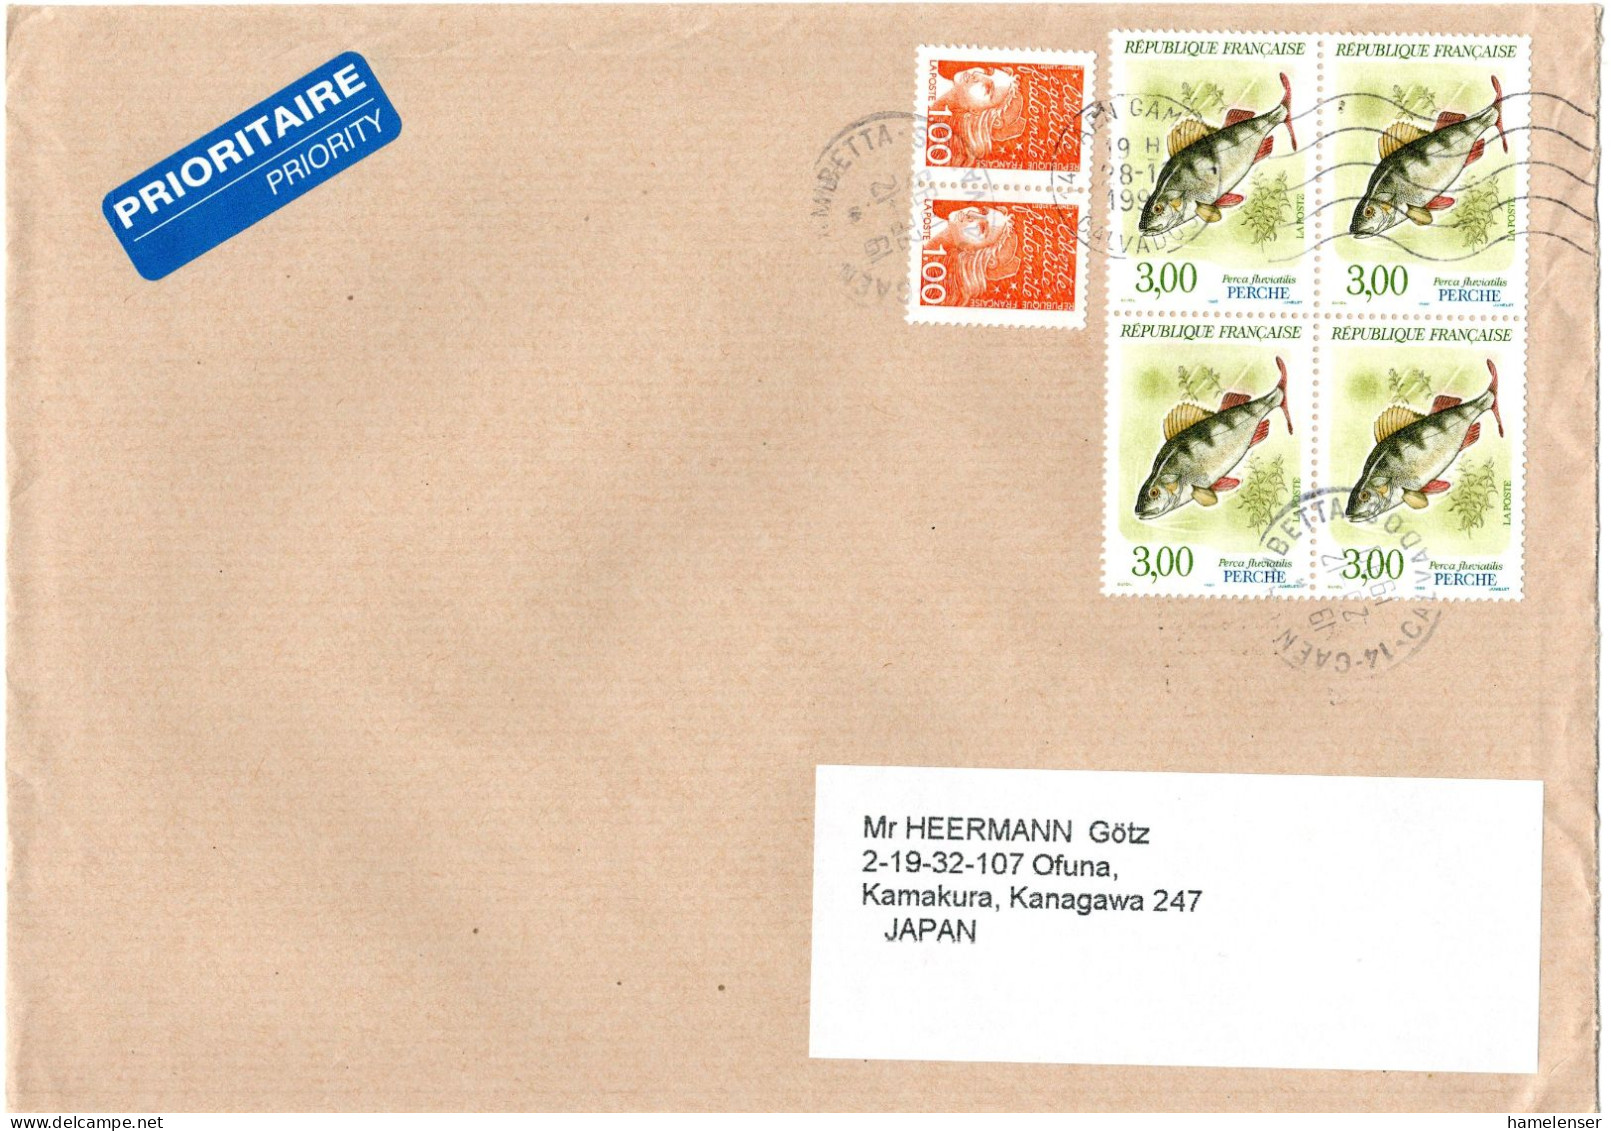 L66354 - Frankreich - 1999 - 3F Flussbarsch 田 MiF A LpBf CAEN -> Japan - Briefe U. Dokumente